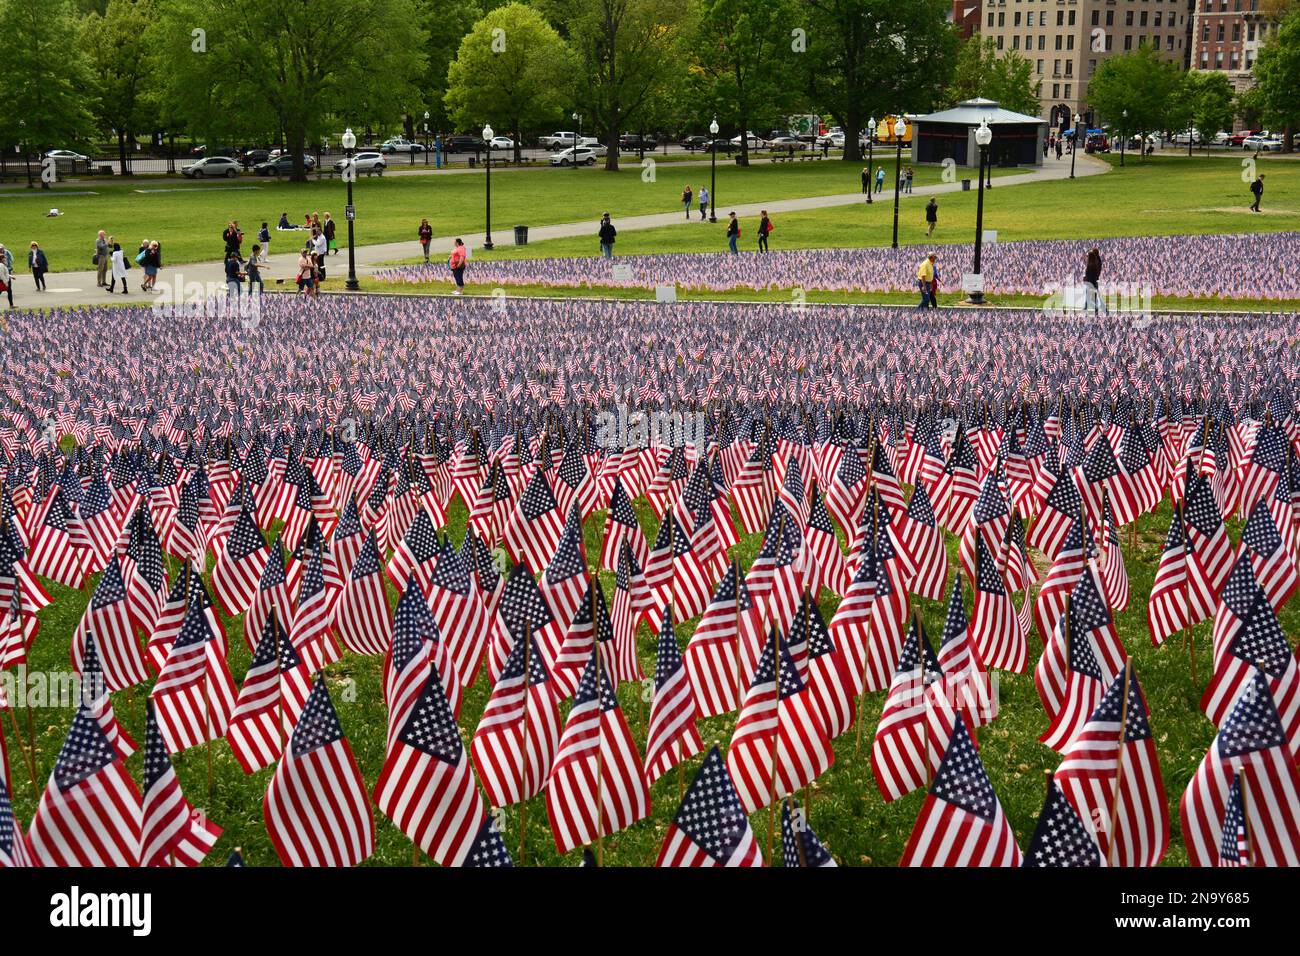 Eine Gedenkfeier mit Nationalflaggen der Vereinigten Staaten von Amerika zu Ehren des gefallenen Militärs. Boston Common, Boston, Massachusetts. Stockfoto